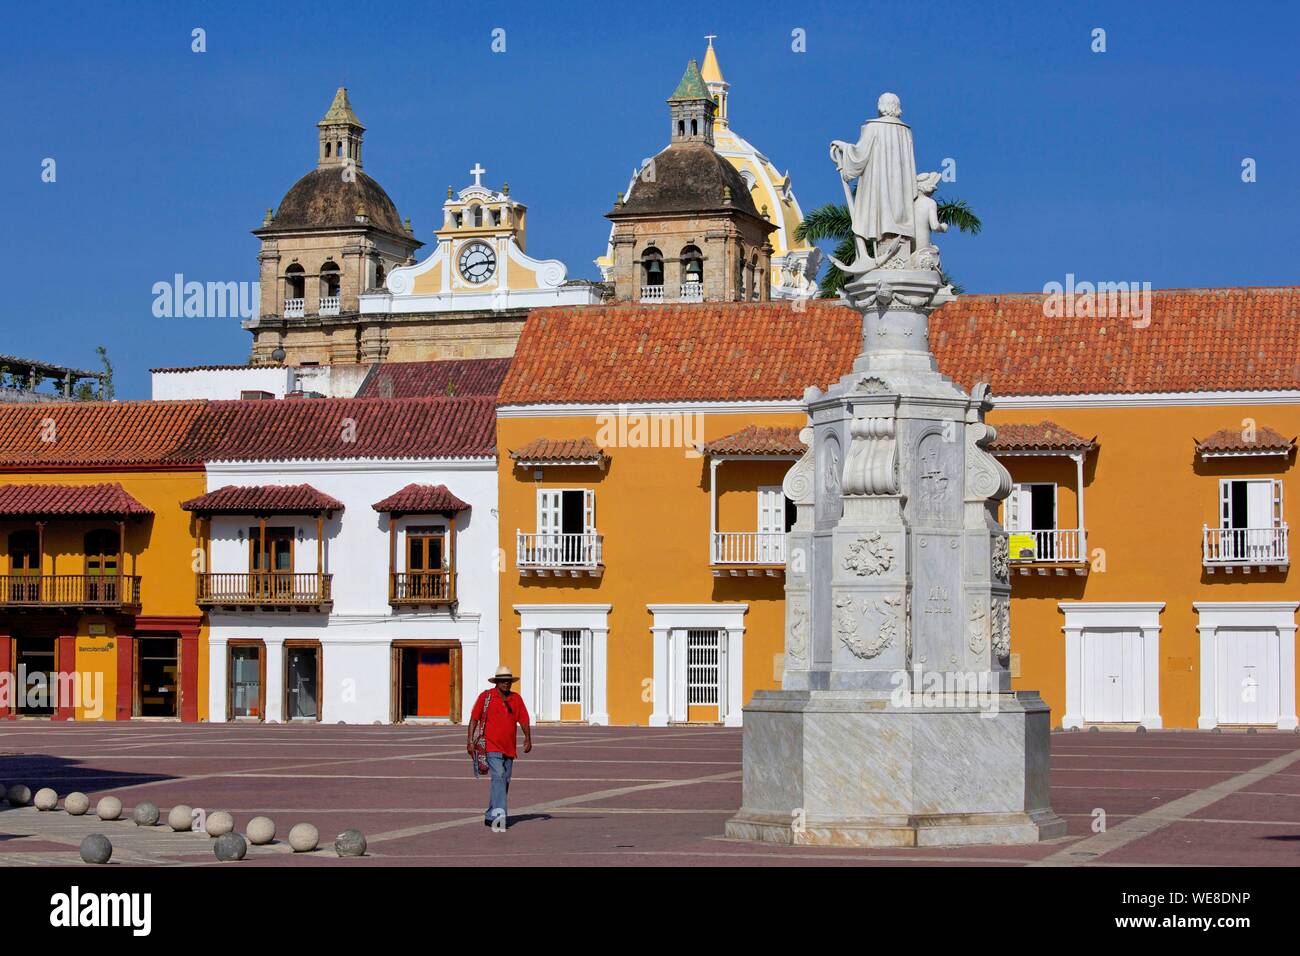 La Colombie, Département de Bolivar, Carthagène, inscrite au patrimoine mondial de l'UNESCO, colonial façades de la Plaza de San Pedro Claver Banque D'Images